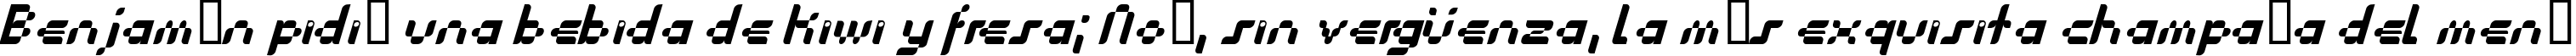 Пример написания шрифтом Anasthesia Italic текста на испанском